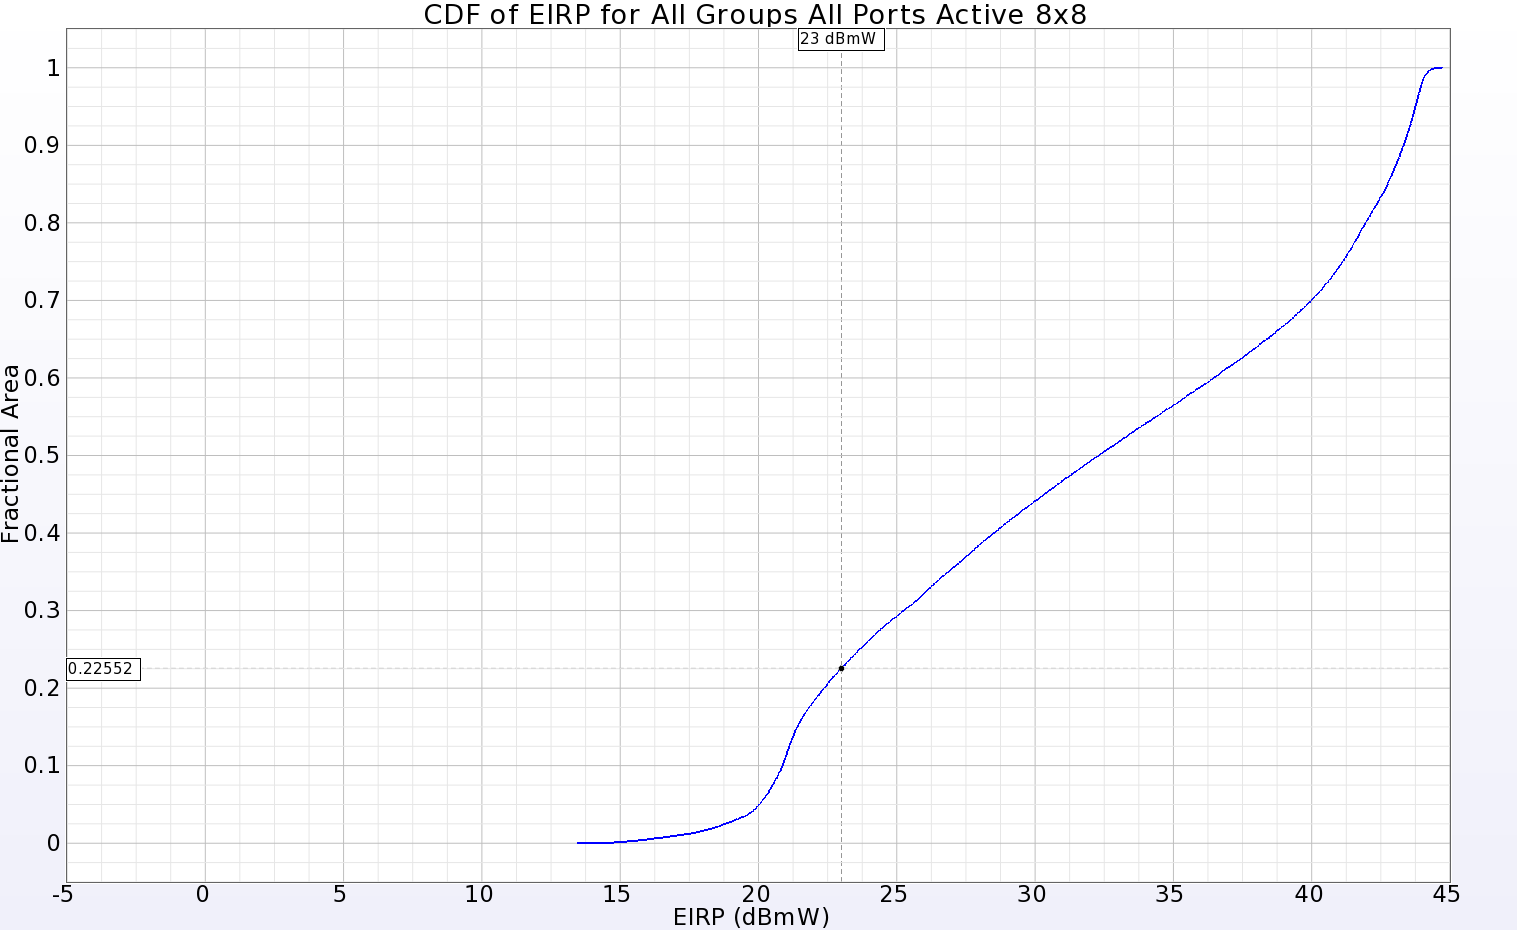 Abbildung 11: Die CDF des EIRP-Diagramms für das vollständige 8x8-Array zeigt eine positive Verstärkung über 77,5 % der Fernzone bei einer Eingangsleistung von 23 dBmW.